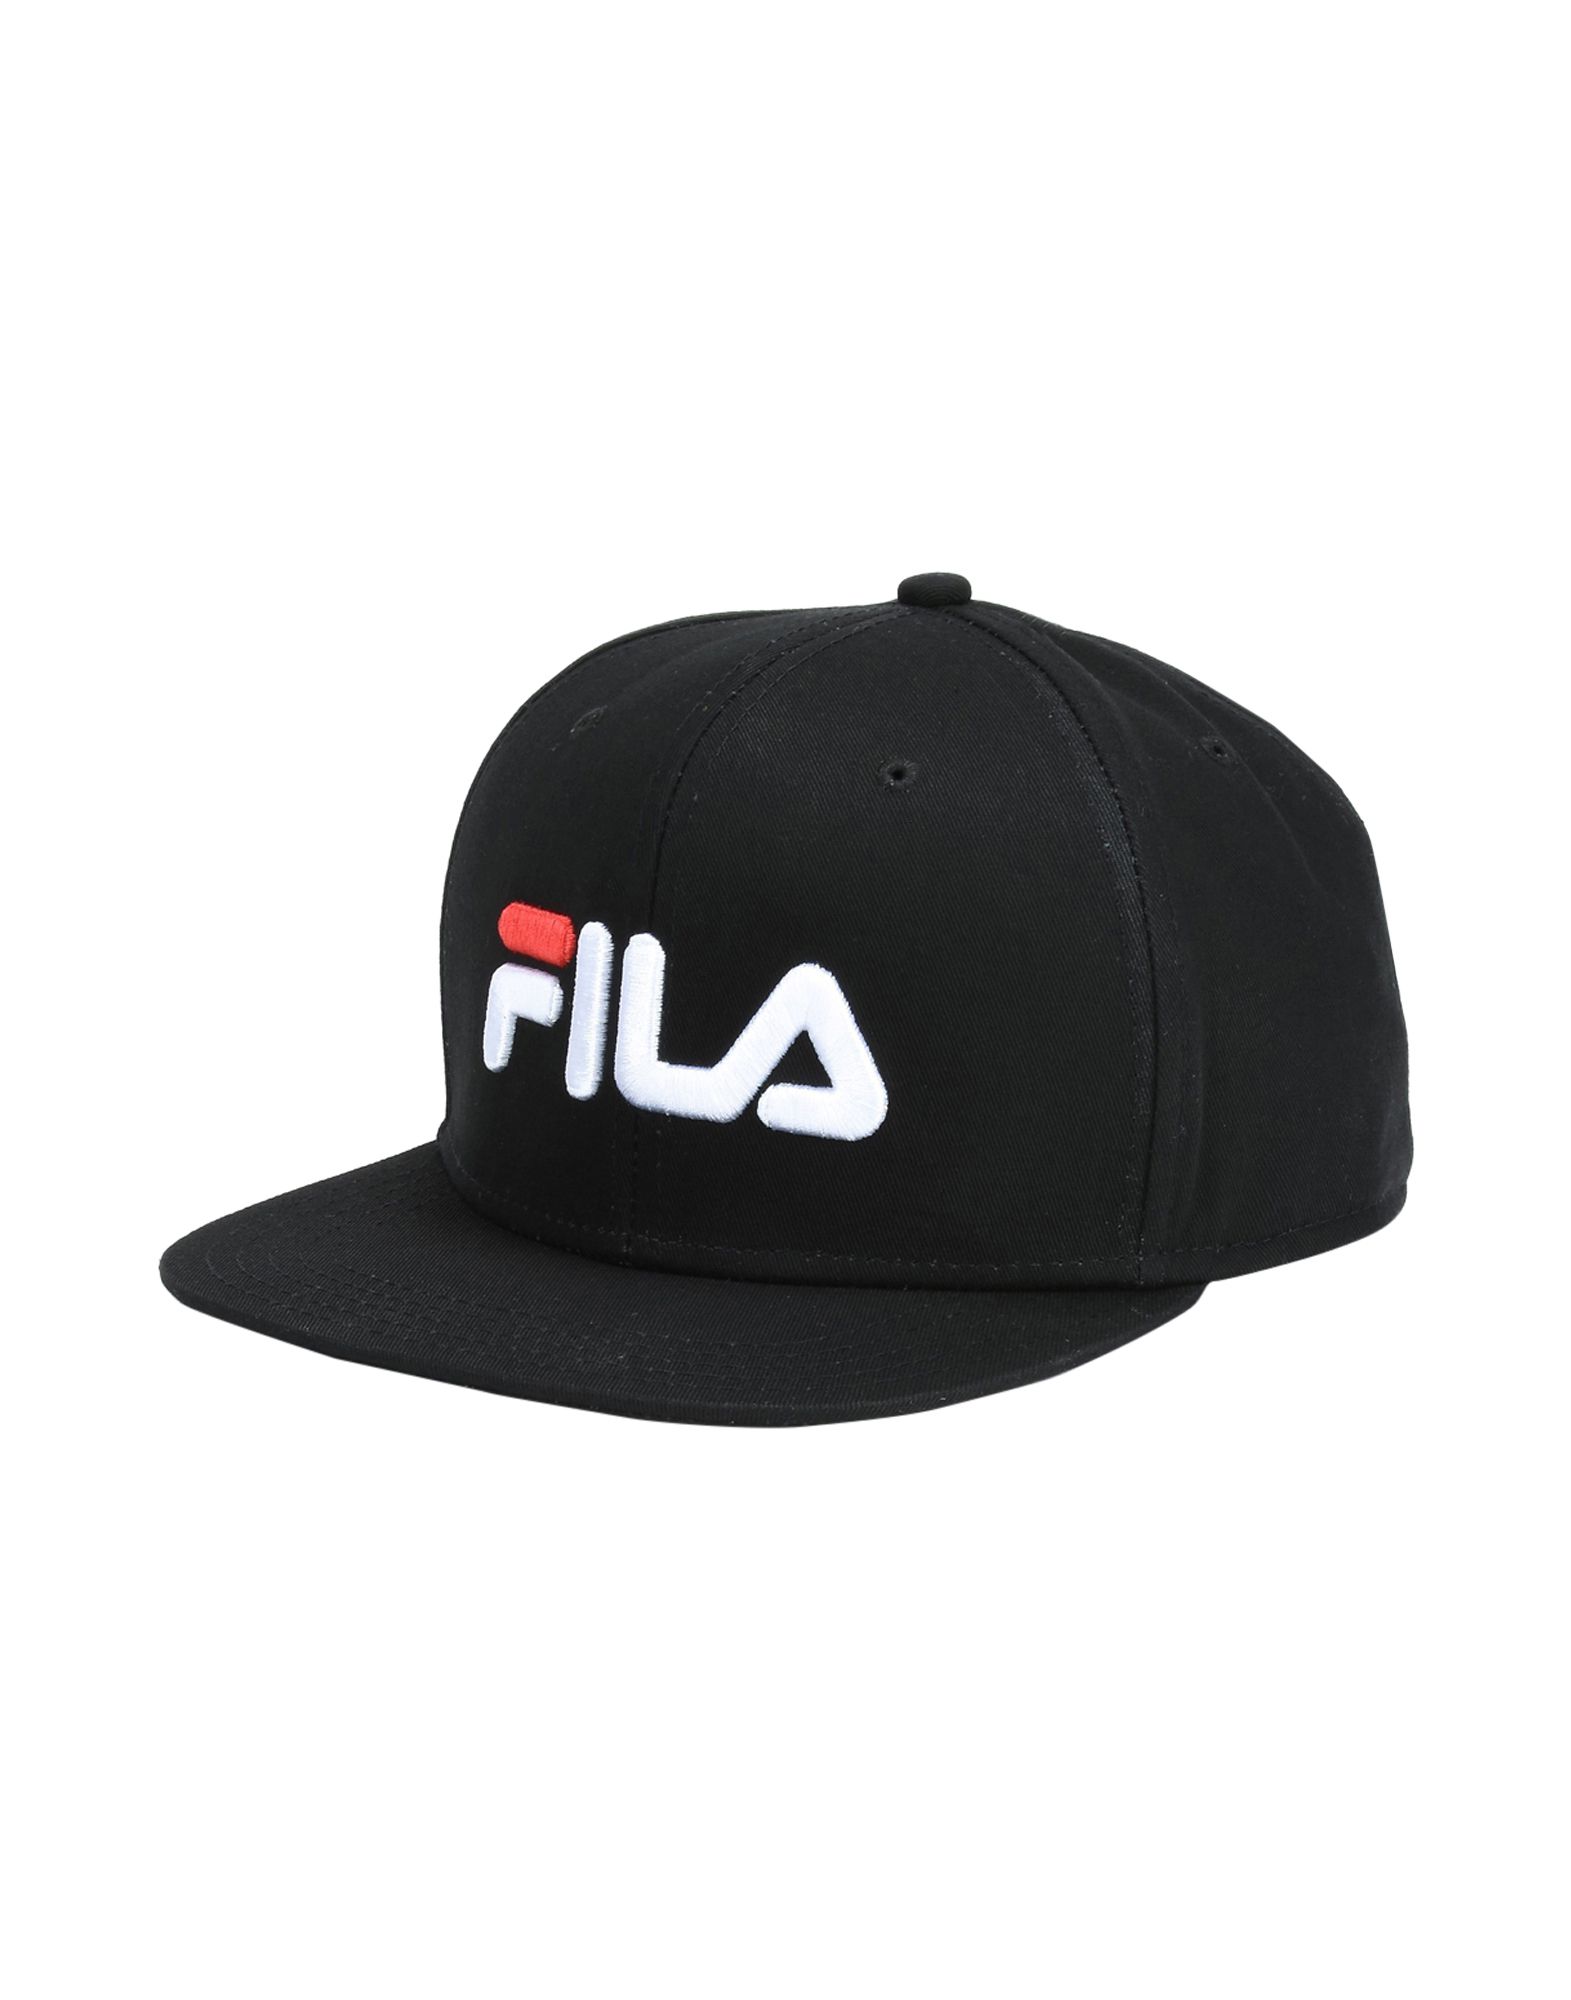 《送料無料》FILA HERITAGE メンズ 帽子 ブラック one size コットン 100% 6 PANEL CLASSIC CAP SNAP BACK